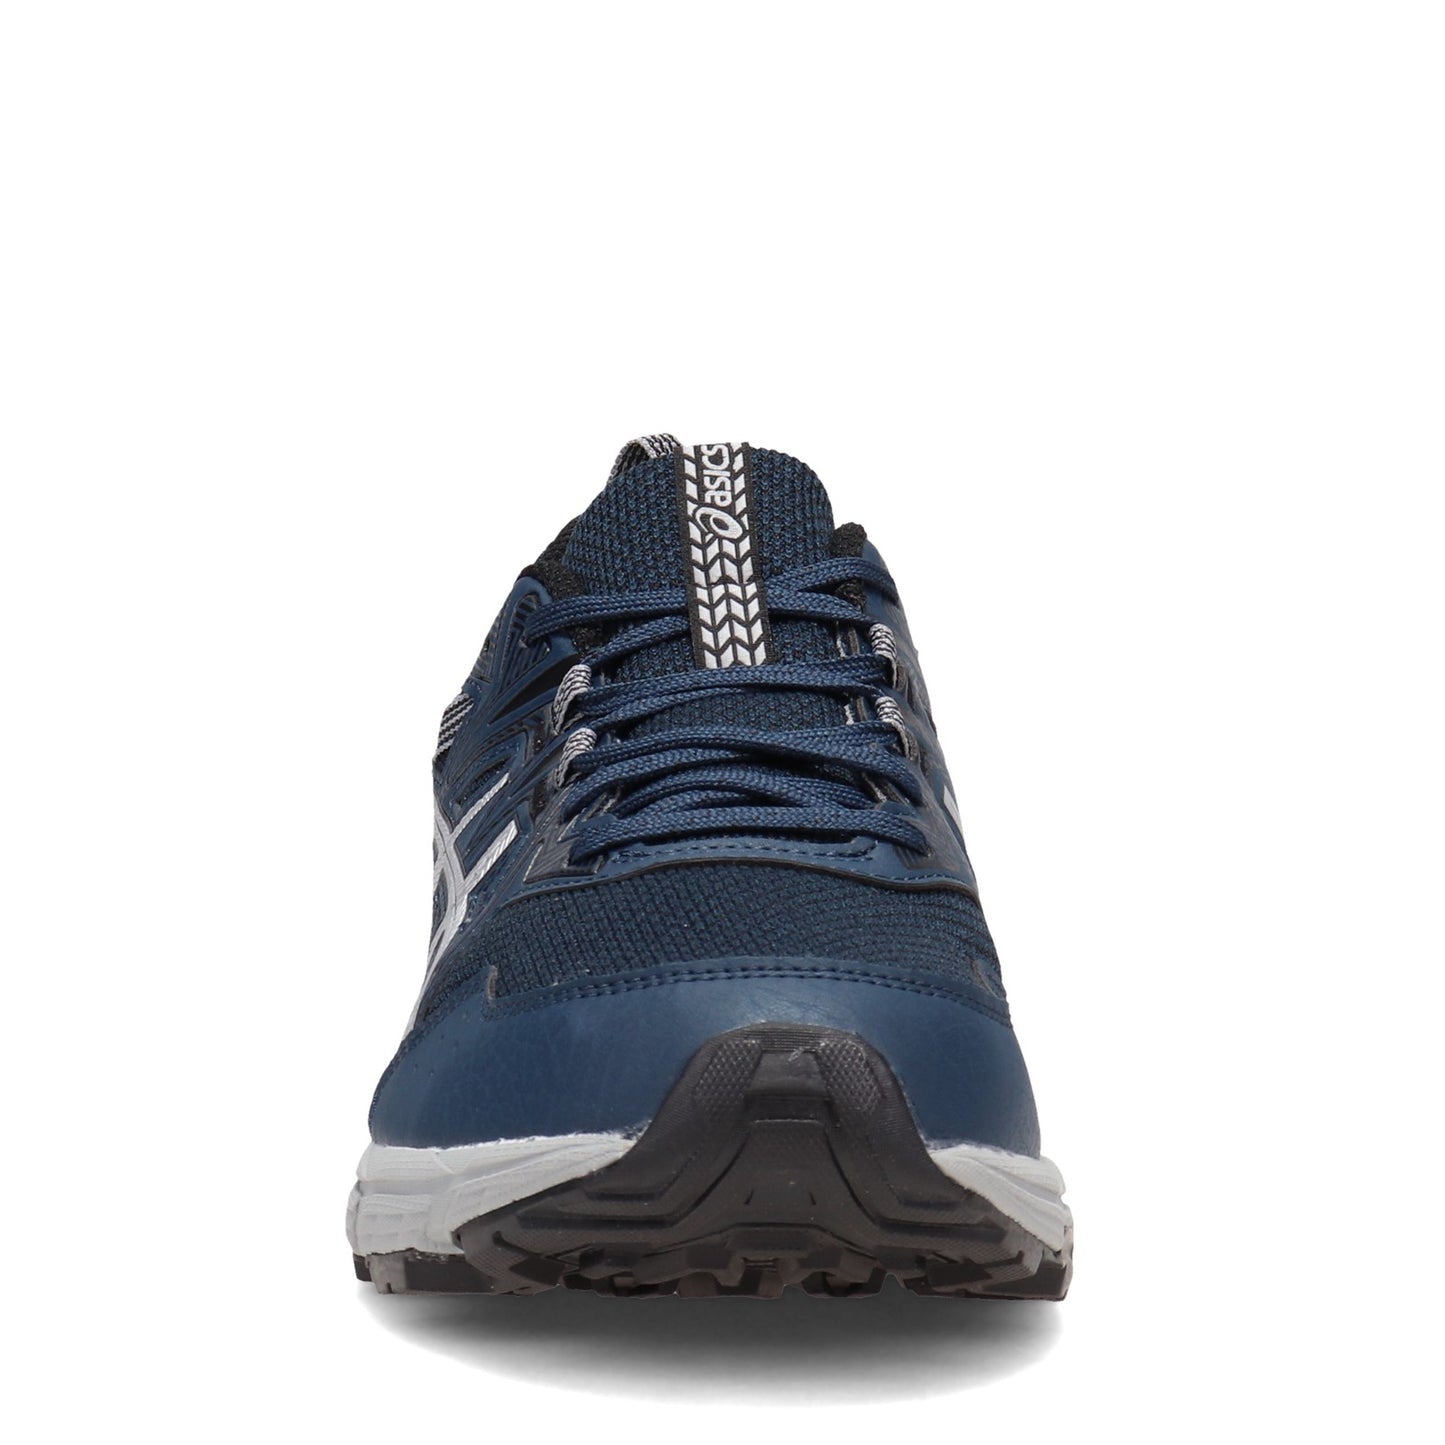 Peltz Shoes  Men's ASICS GEL-Venture 8 Trail Running Shoe BLUE SILVER 1011A824.404